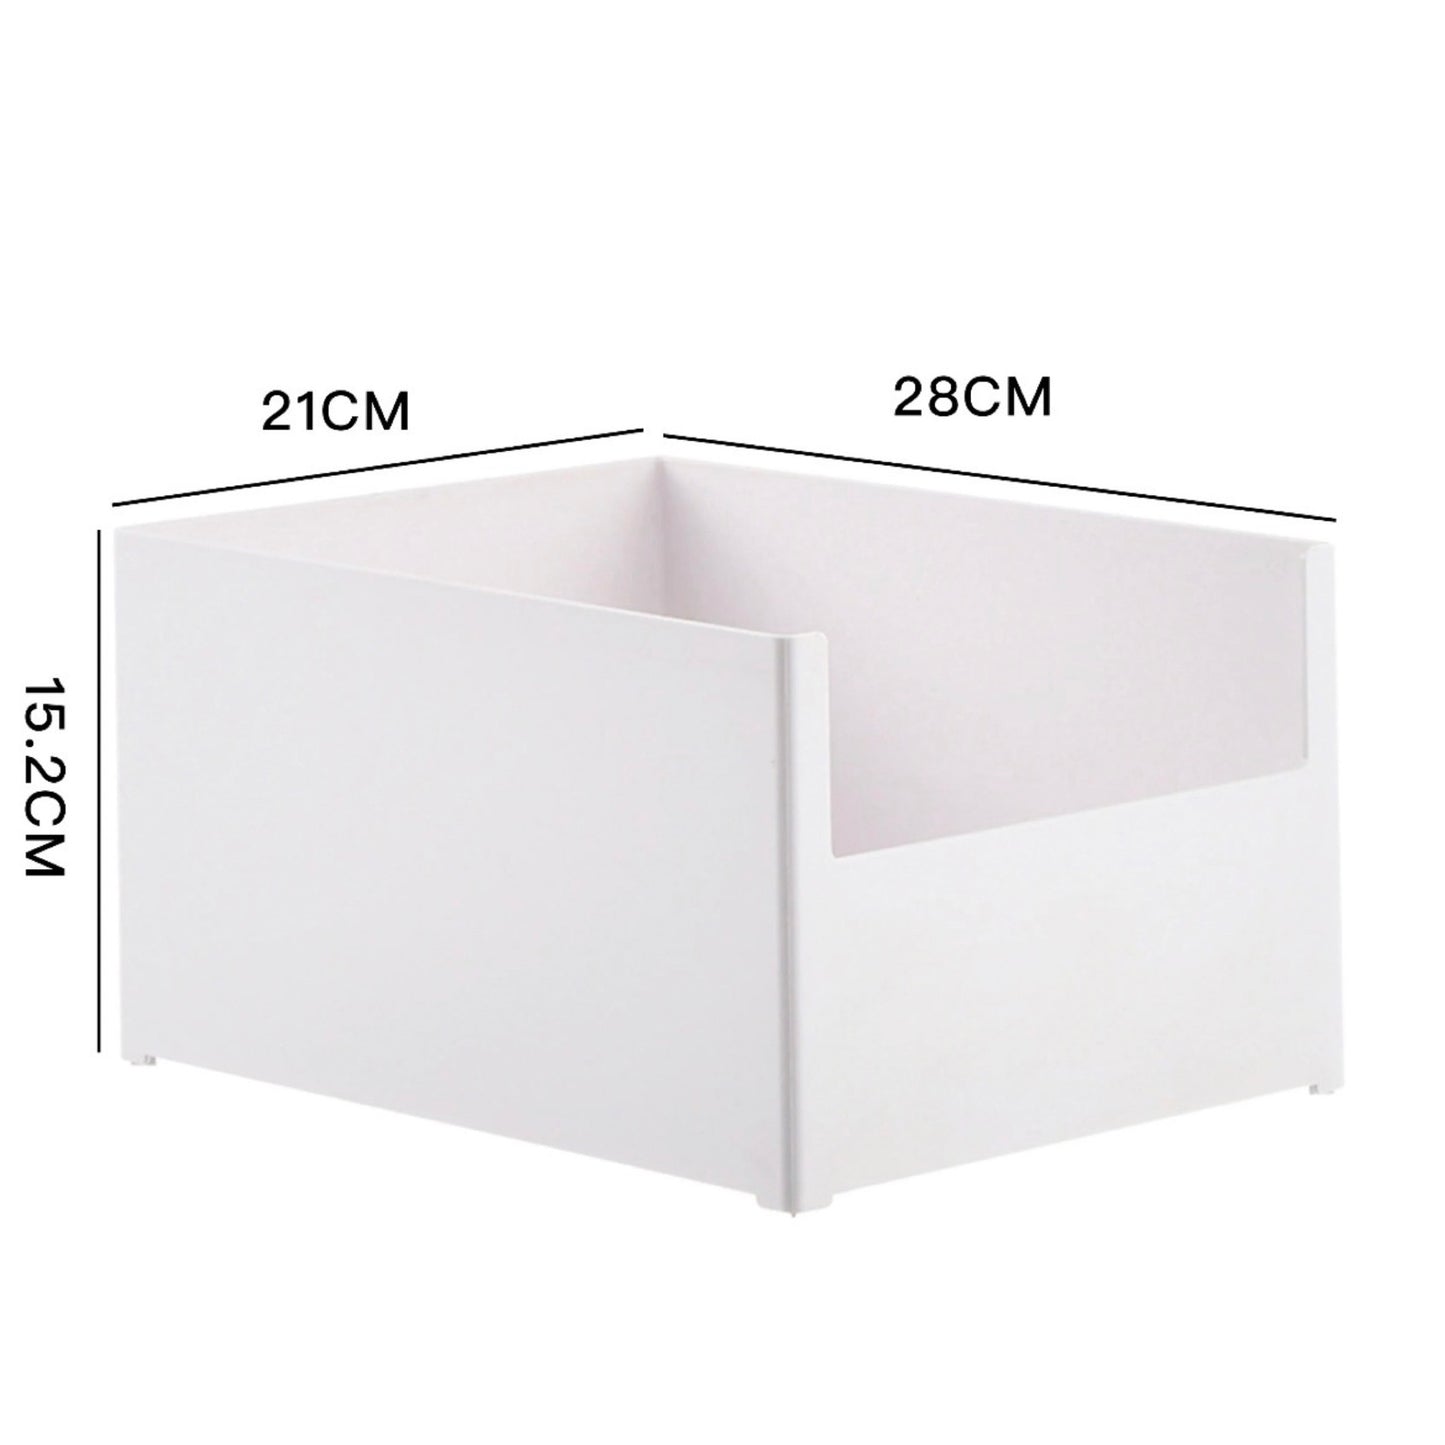 Eine leere, weiße, stapelbare Aufbewahrungsbox, die halb offen auf einer Seite ist, mit den Maßen 28 cm in der Breite, 21 cm in der Tiefe und 15,2 cm in der Höhe. Das schlichte Design eignet sich ideal für übersichtliche Lagerung in verschiedenen Bereichen des Hauses.